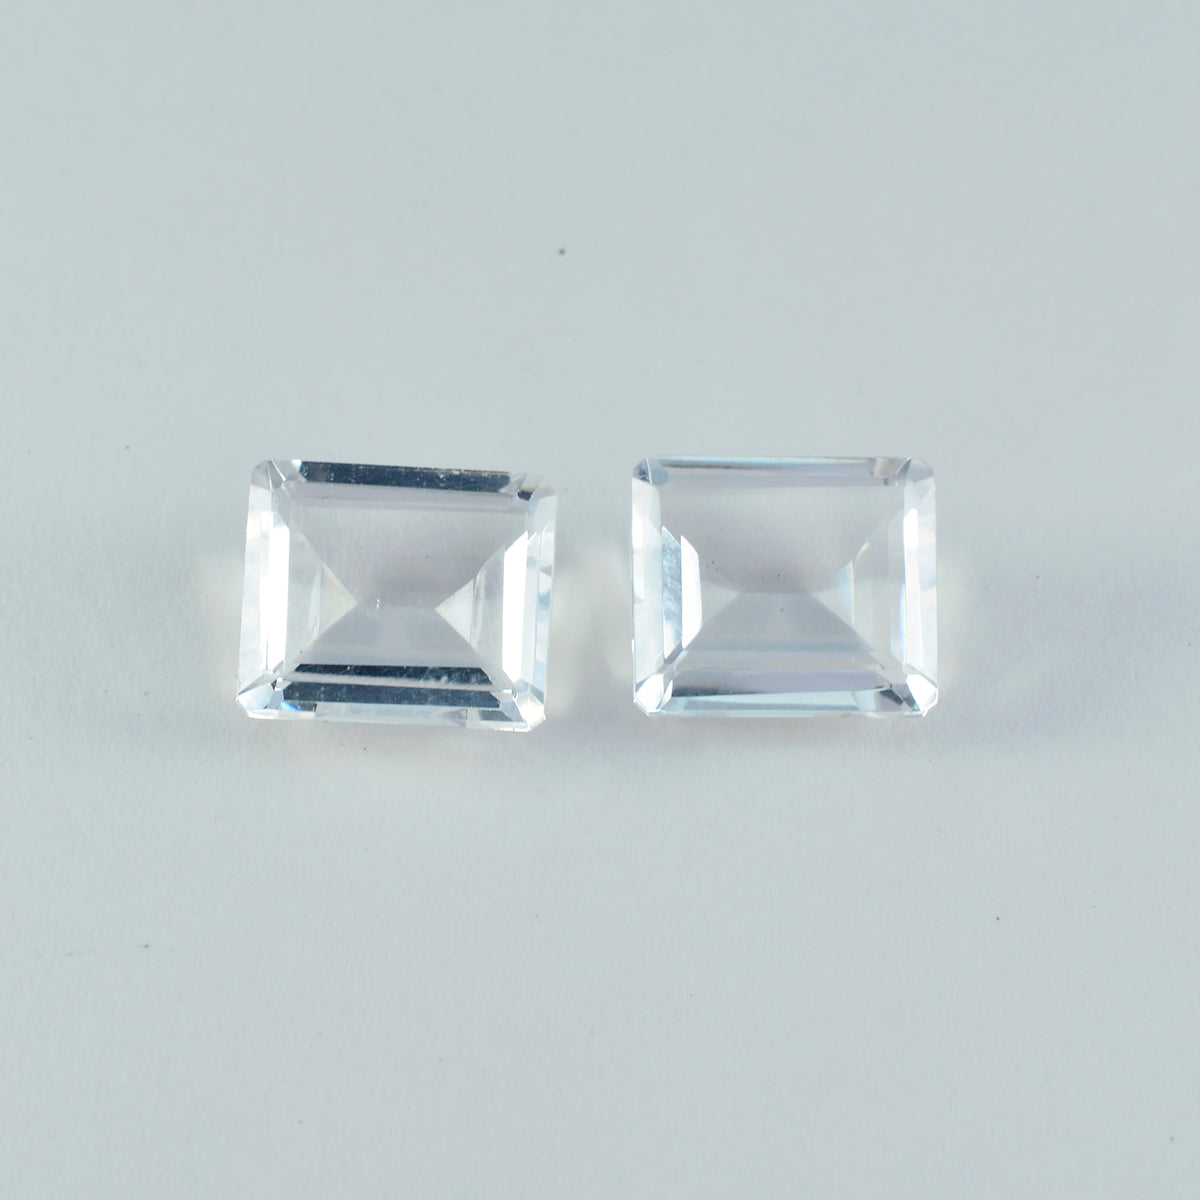 riyogems 1шт белый кристалл кварца ограненный 9x11 мм восьмиугольная форма драгоценные камни превосходного качества